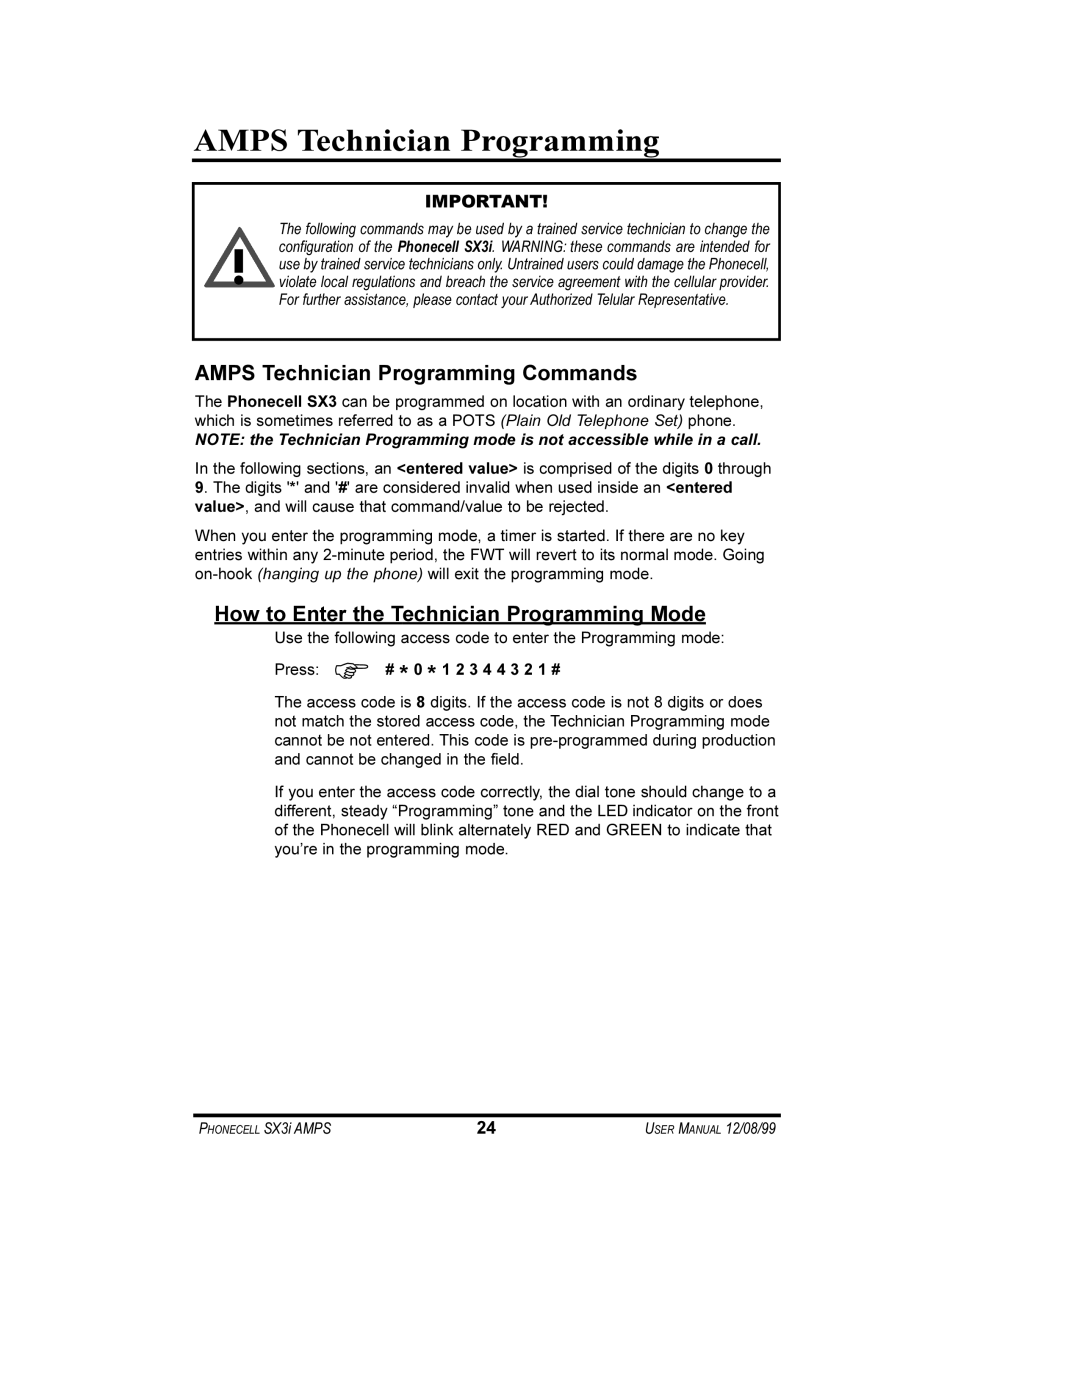 Telular AMPS Technician Programming Commands, How to Enter the Technician Programming Mode, PHONECELL SX3i AMPS 